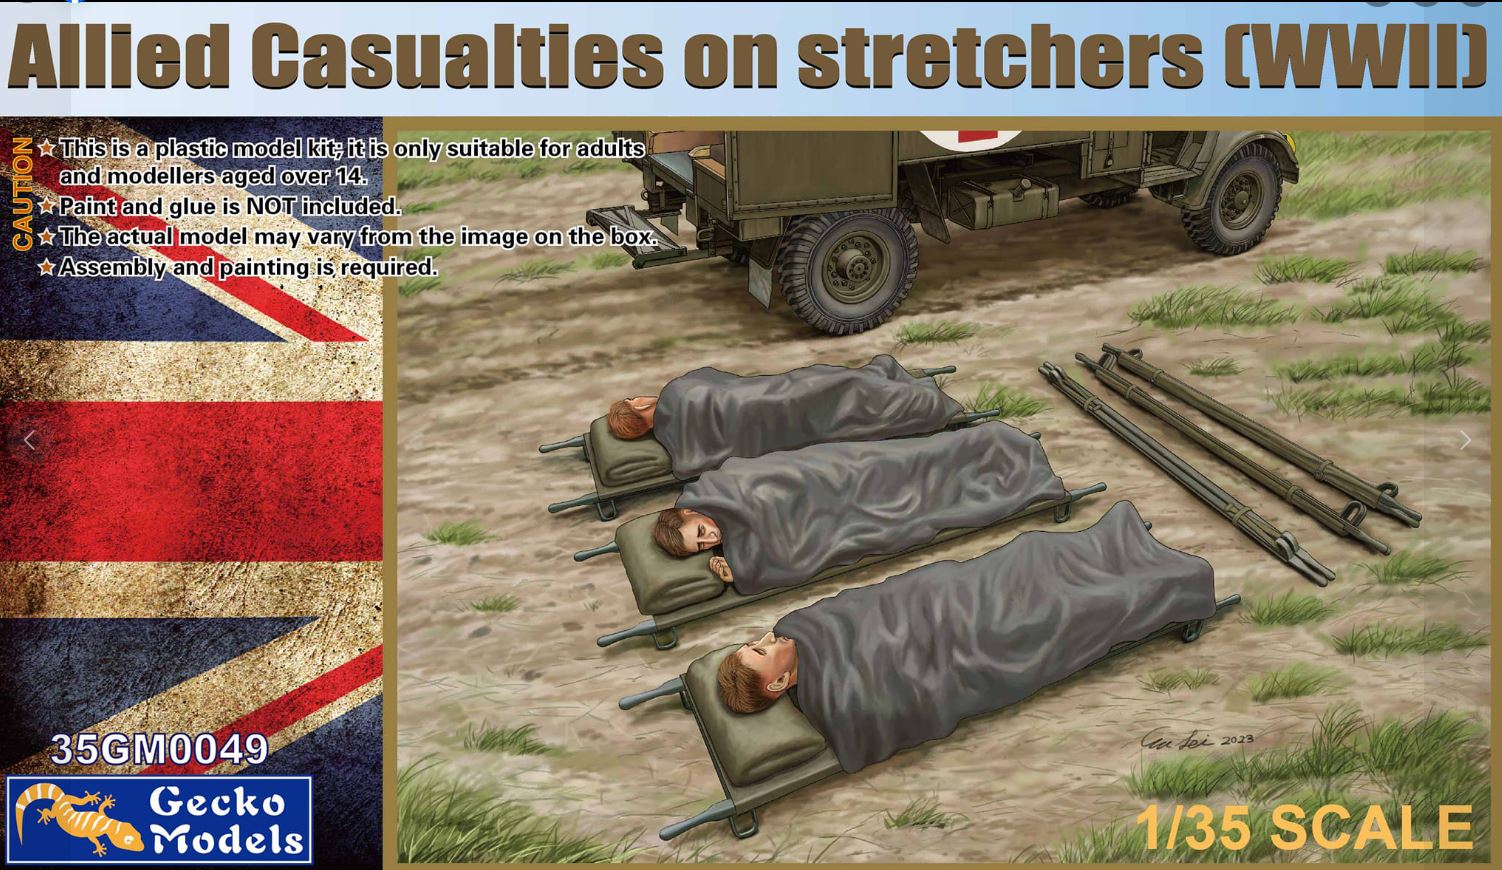 35GM0049  фигуры  Allied Casualties on Stretchers (WWII)  (1:35)